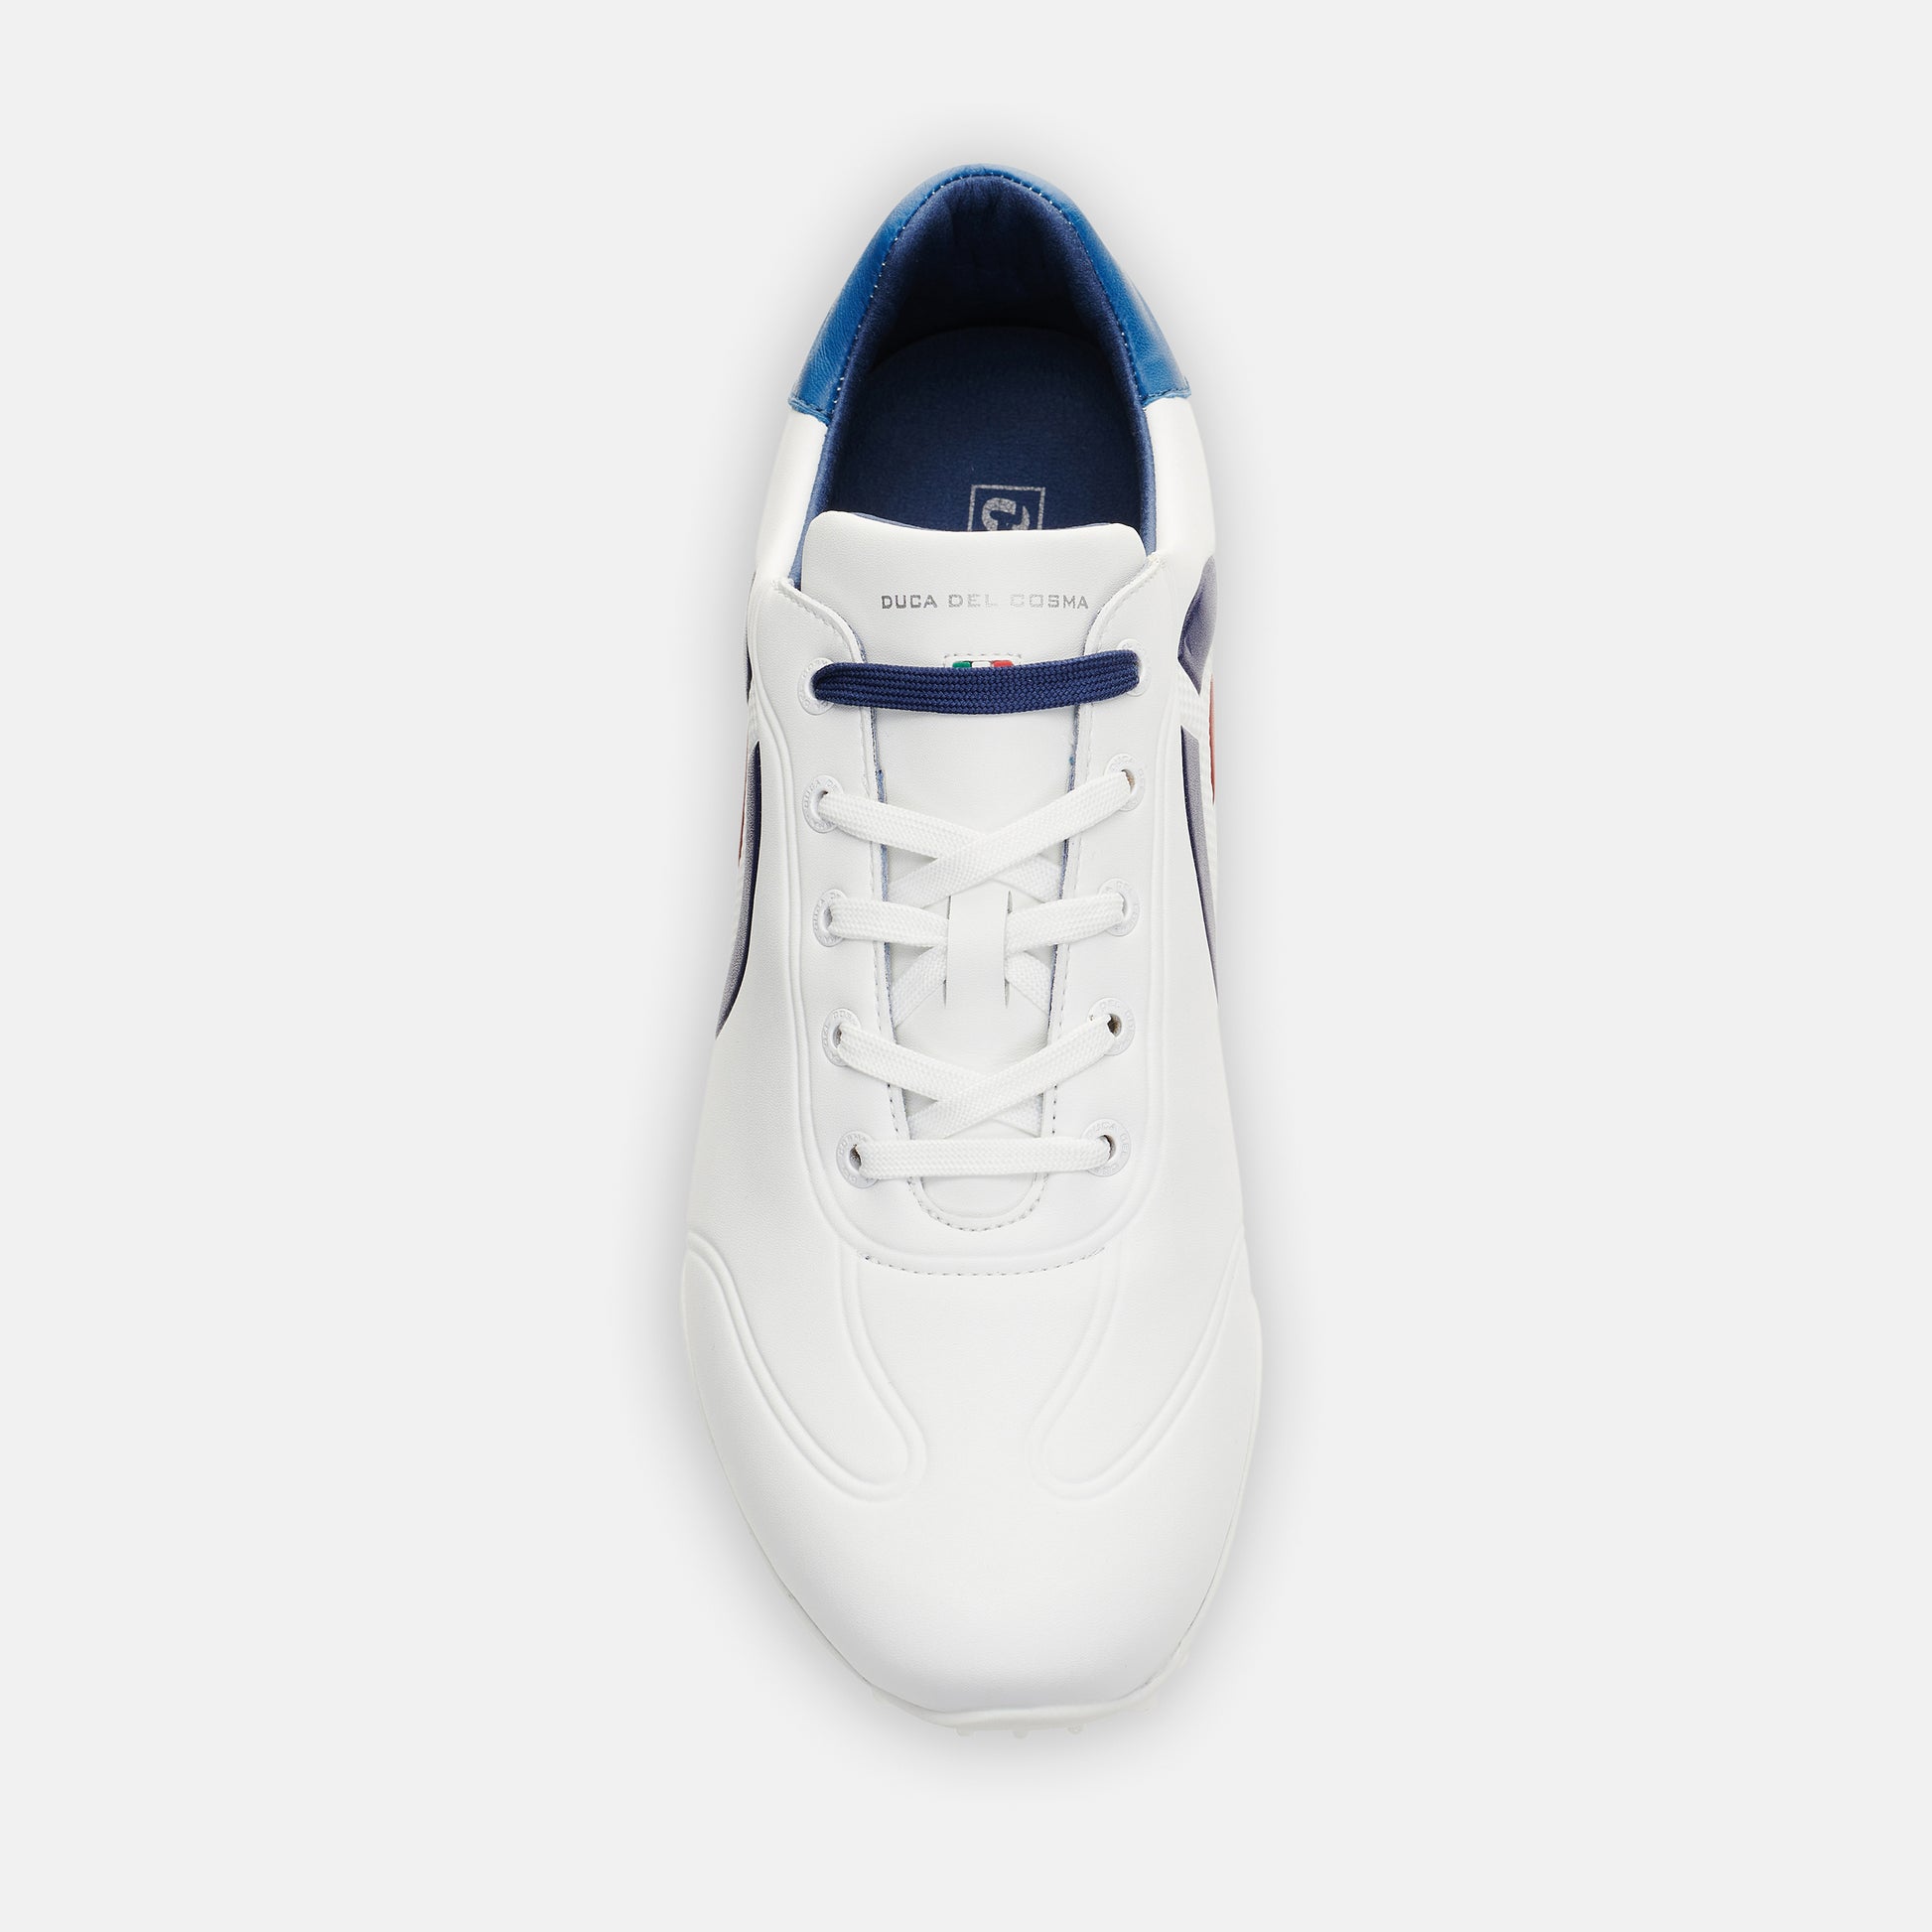 Kingscup waterproof white men's golf shoe best priced golf shoe